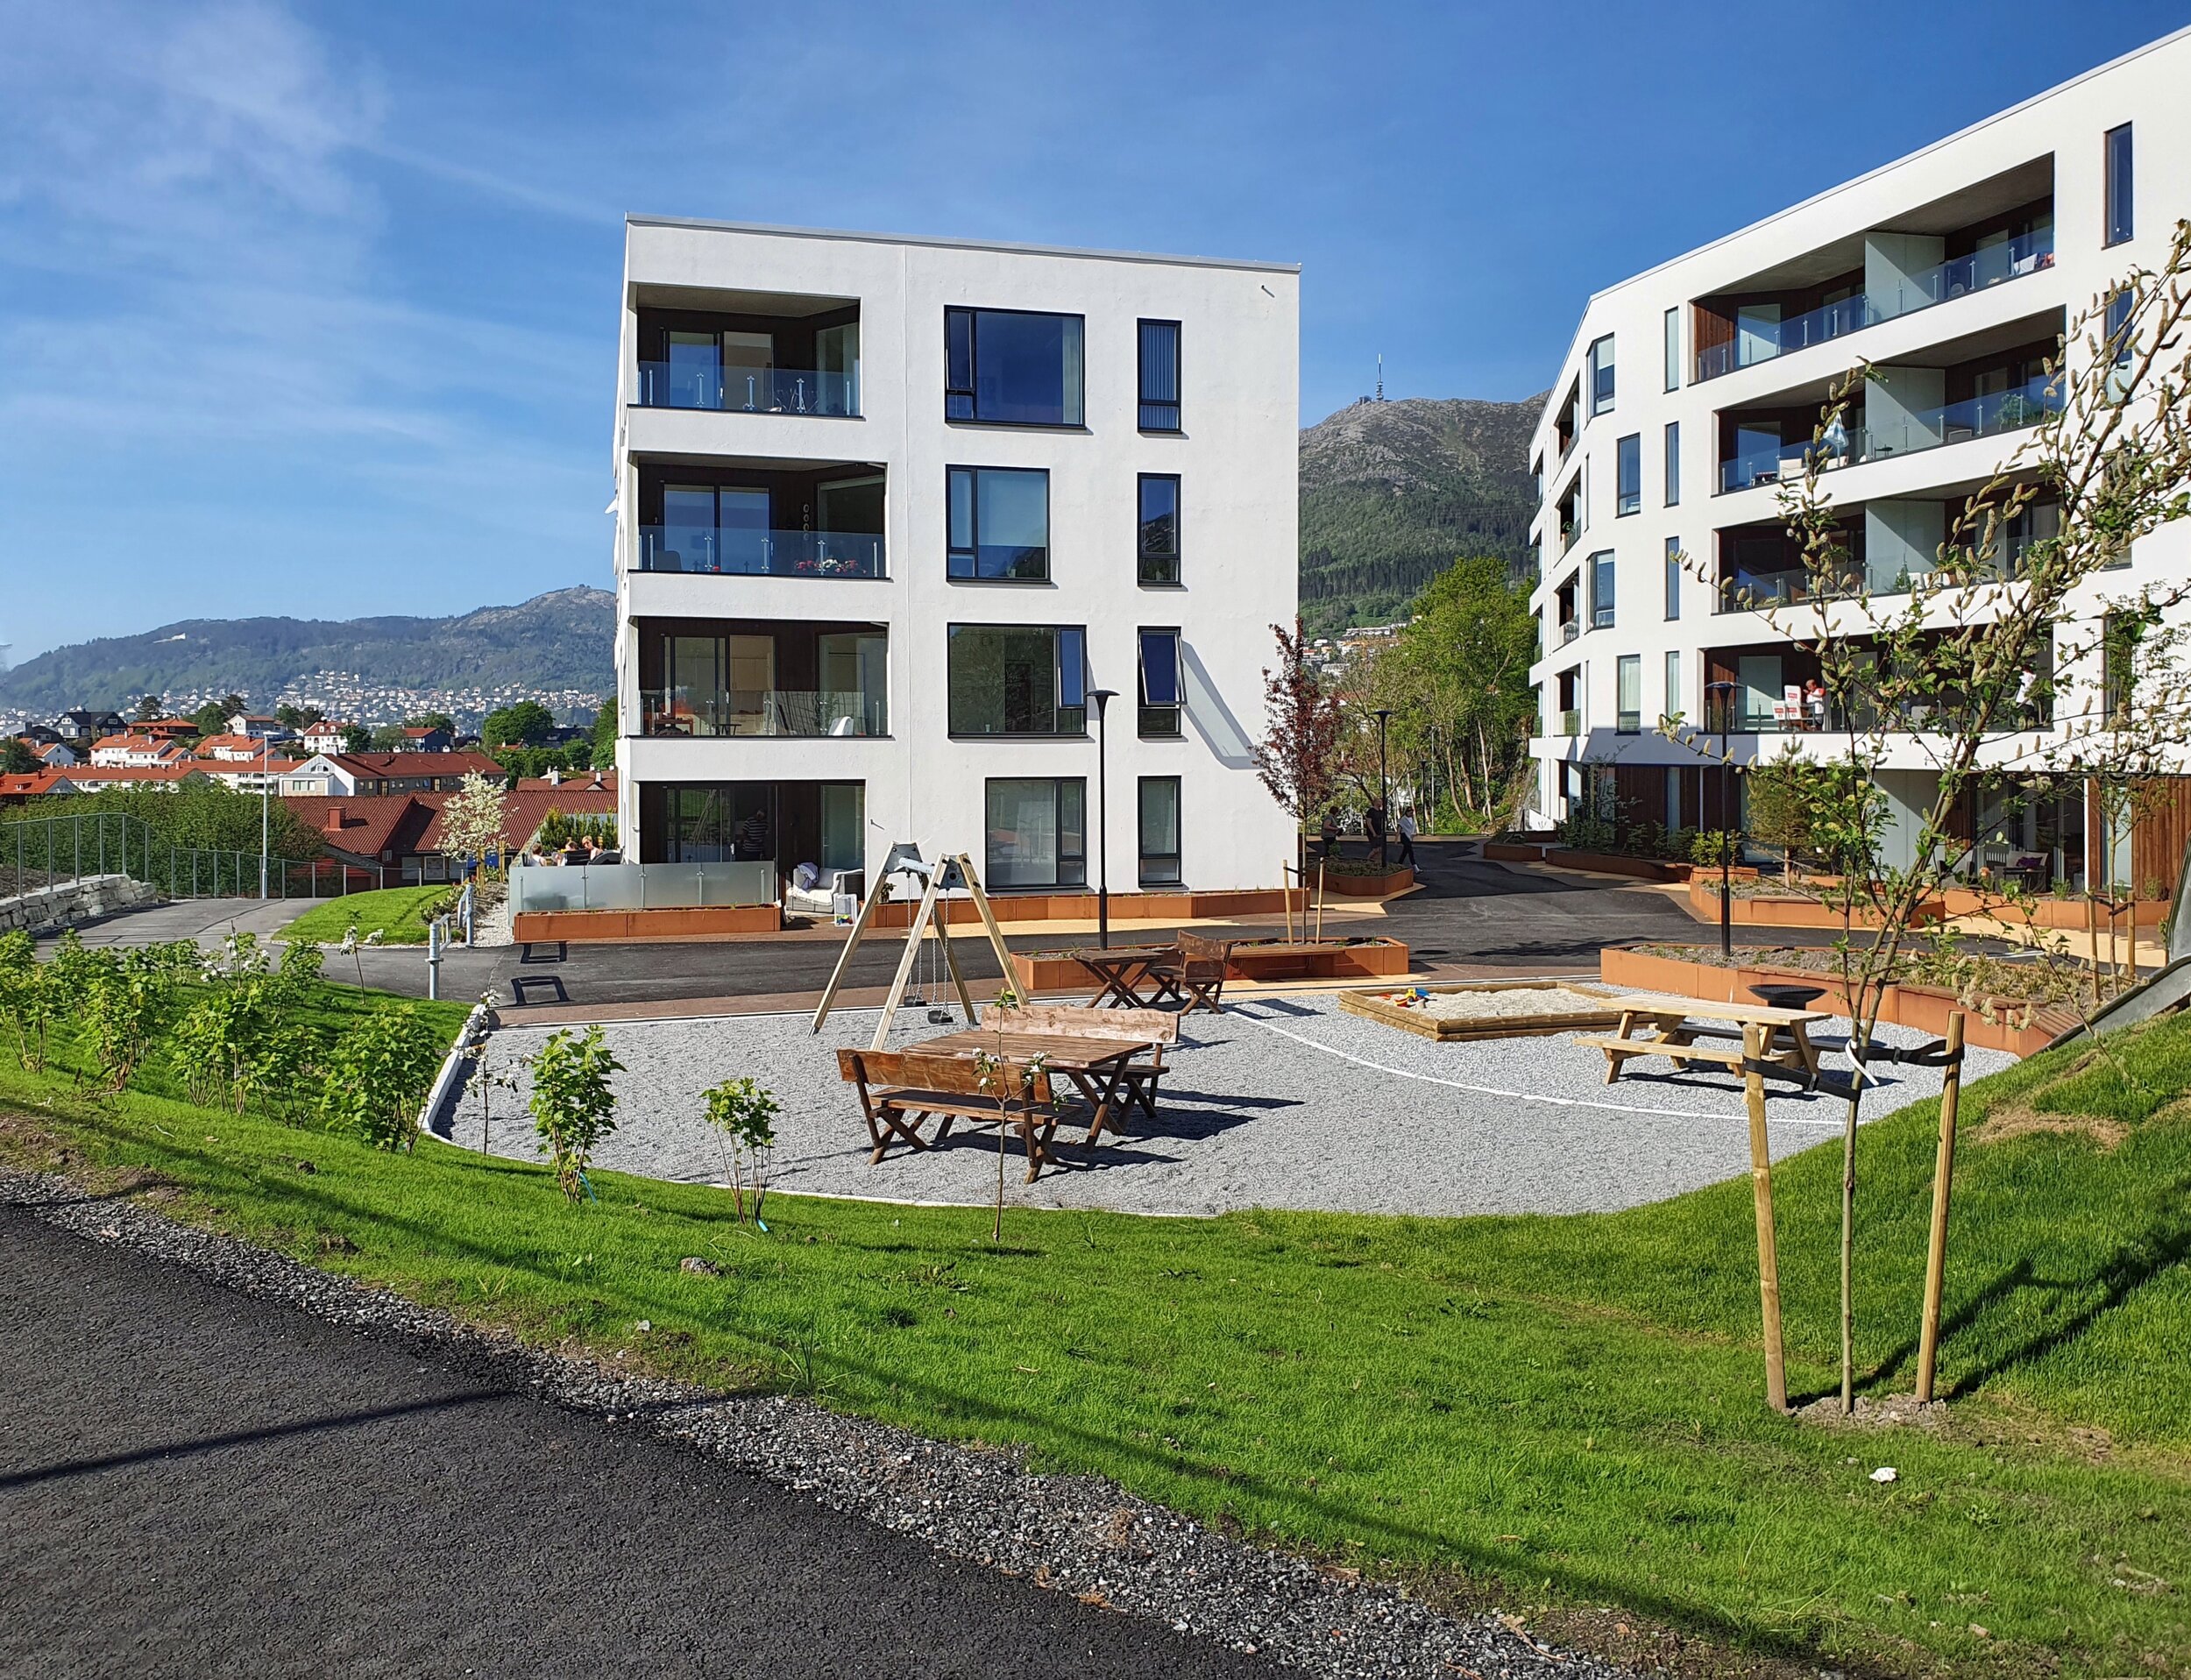   Sted:  Bergen ▎ Status:  Ferdigstilt 2021 ▎ Areal:  ca 5.100 m² ▎ Byggherre:  Konseptbygg AS ▎  Utmerkelser:  1. plass plan- og designkonkurranse 